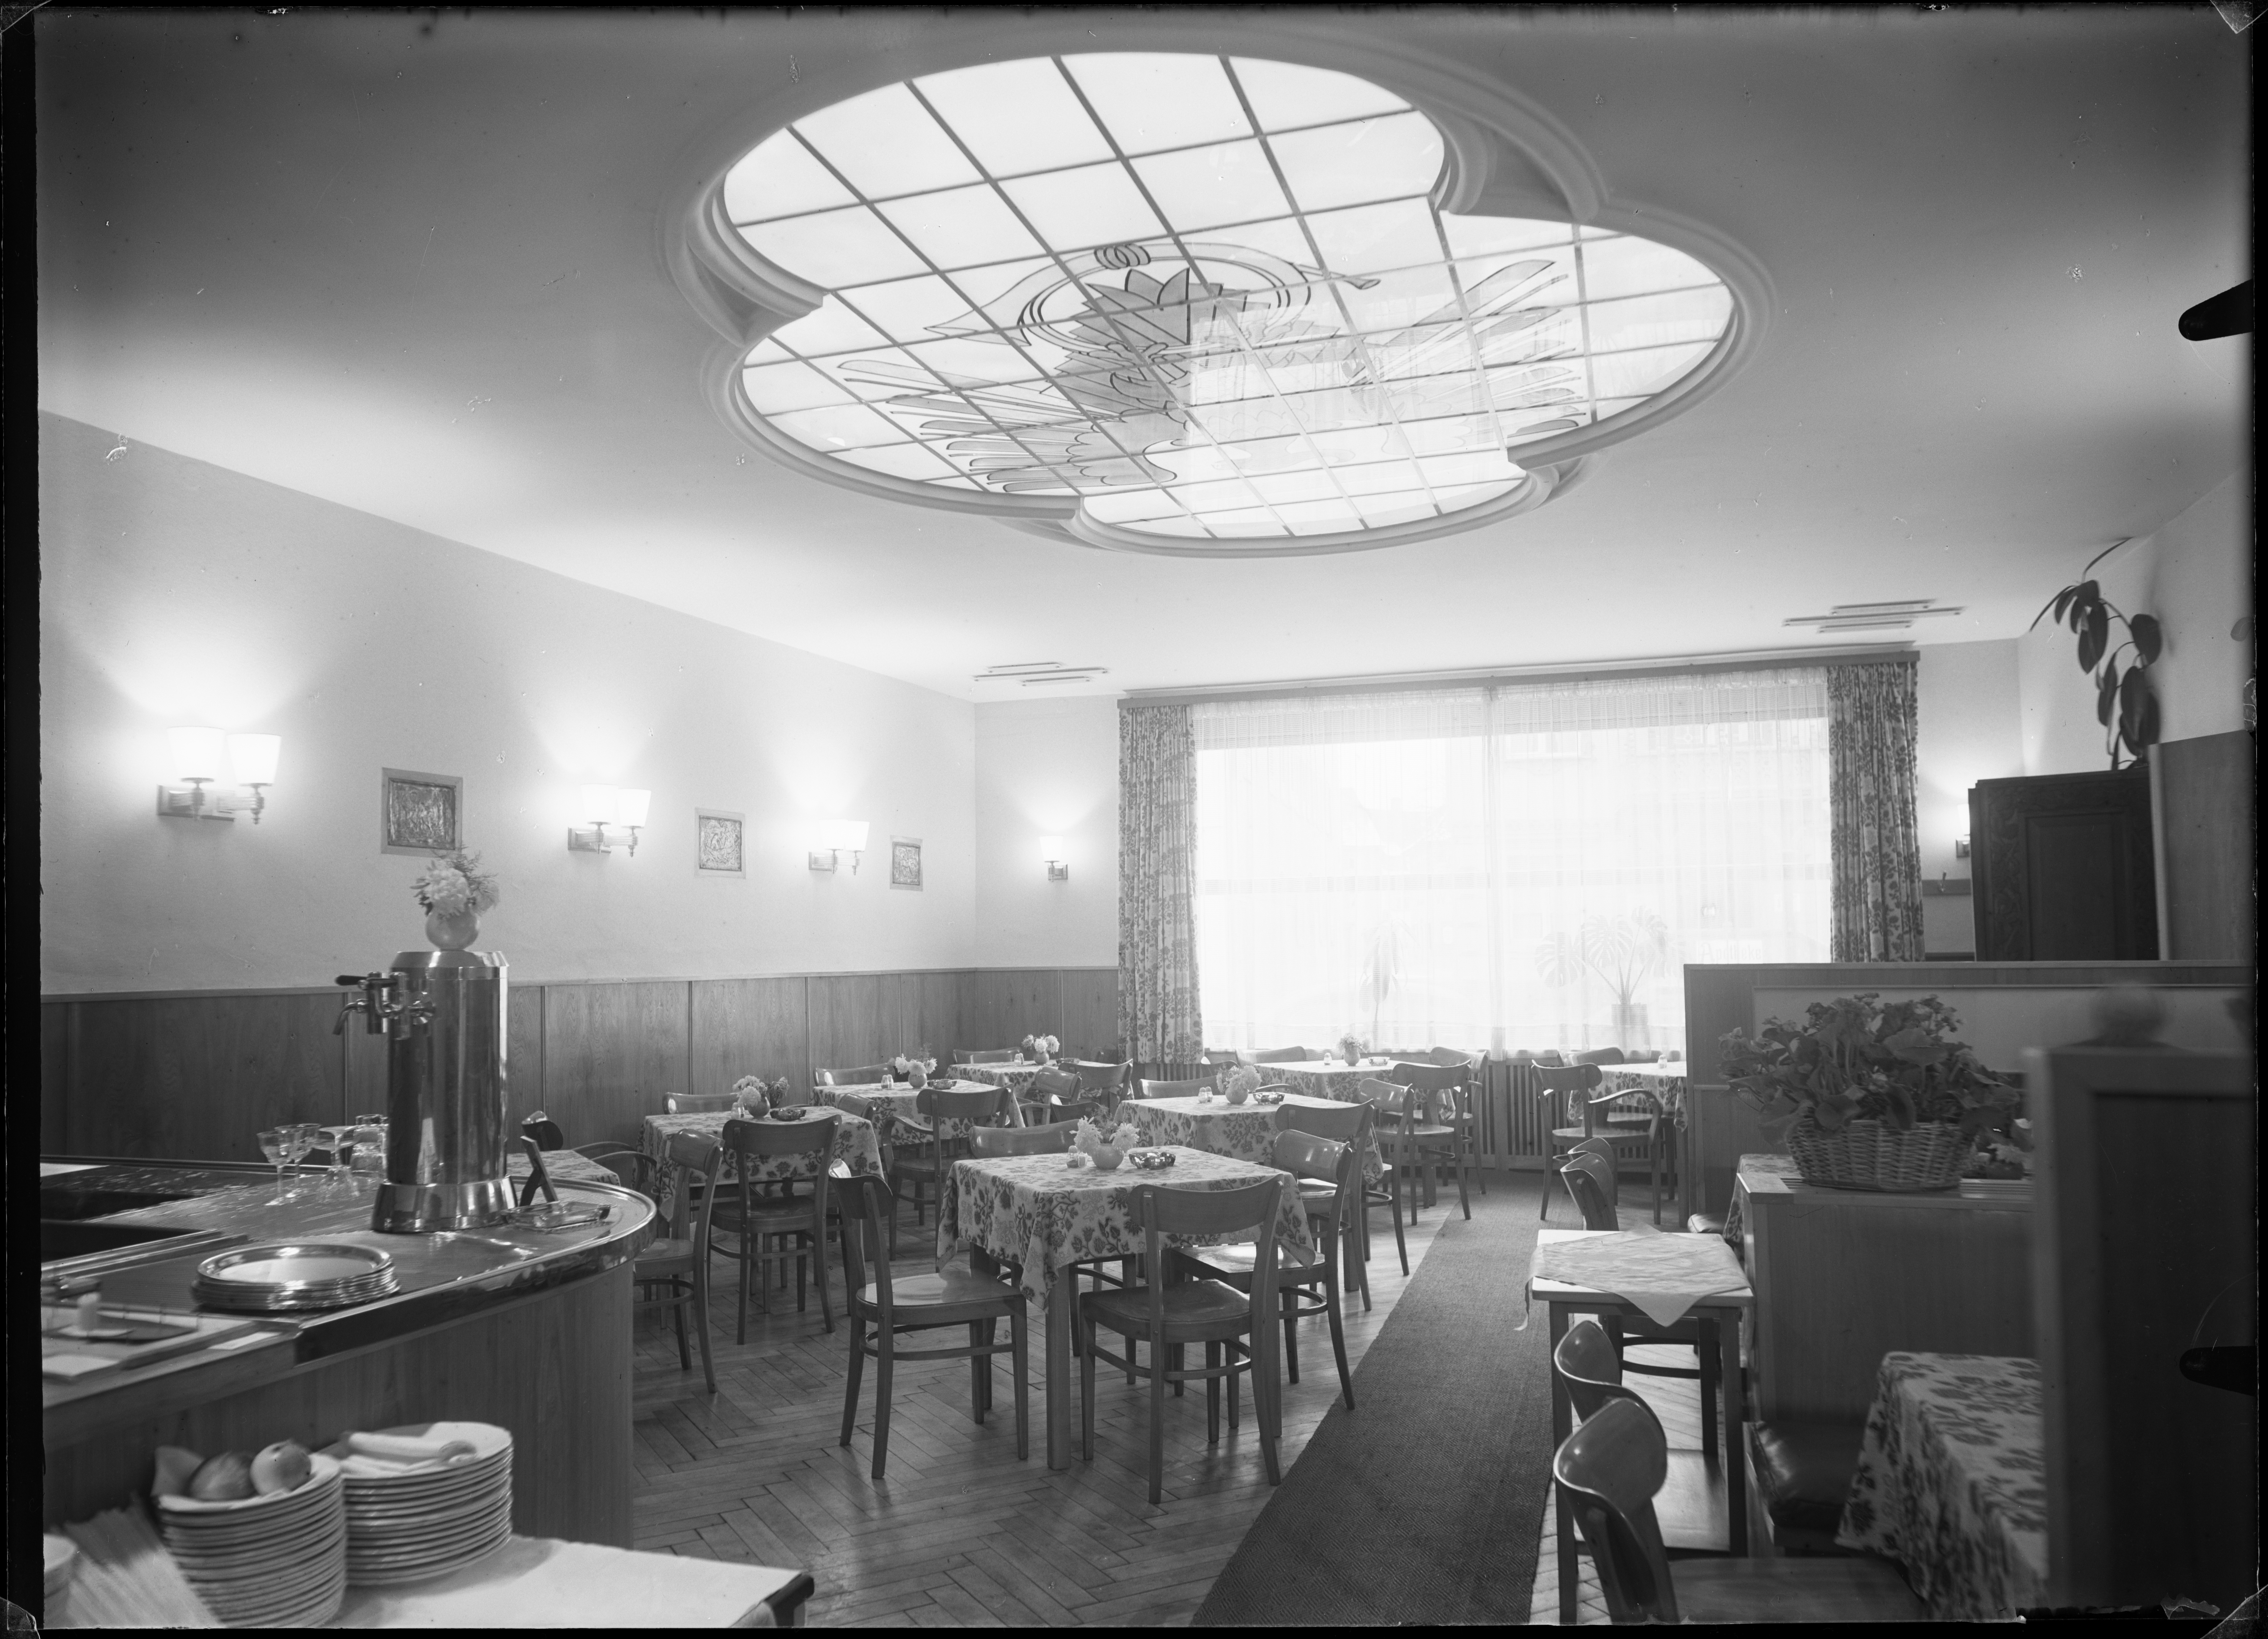  Im Gastraum des Hotels Adler-Post. Hotels setzten früh Licht ein und waren auch Pioniere der Nutzung elektrischer Haushaltsgeräte, Stadtarchiv Stockach, Bildarchiv Foto Hotz. 